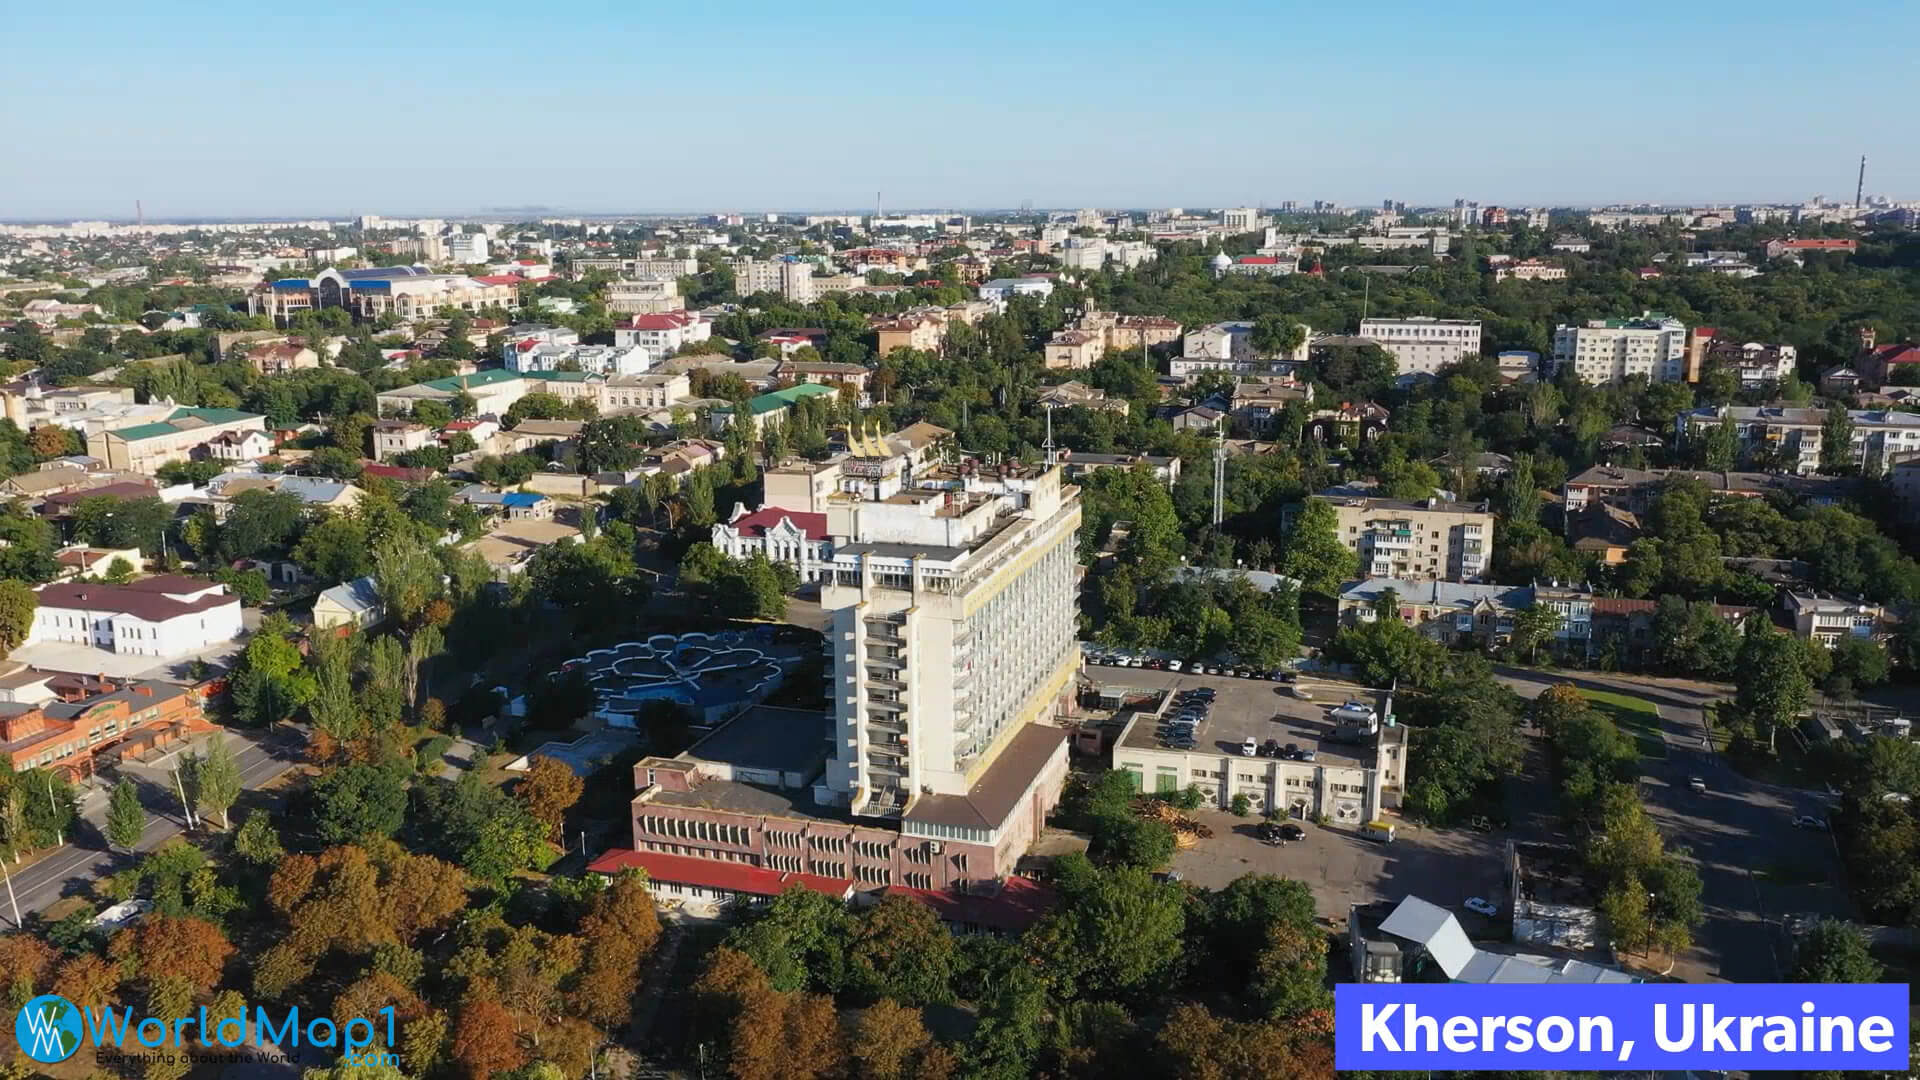 City of Kherson in Ukraine